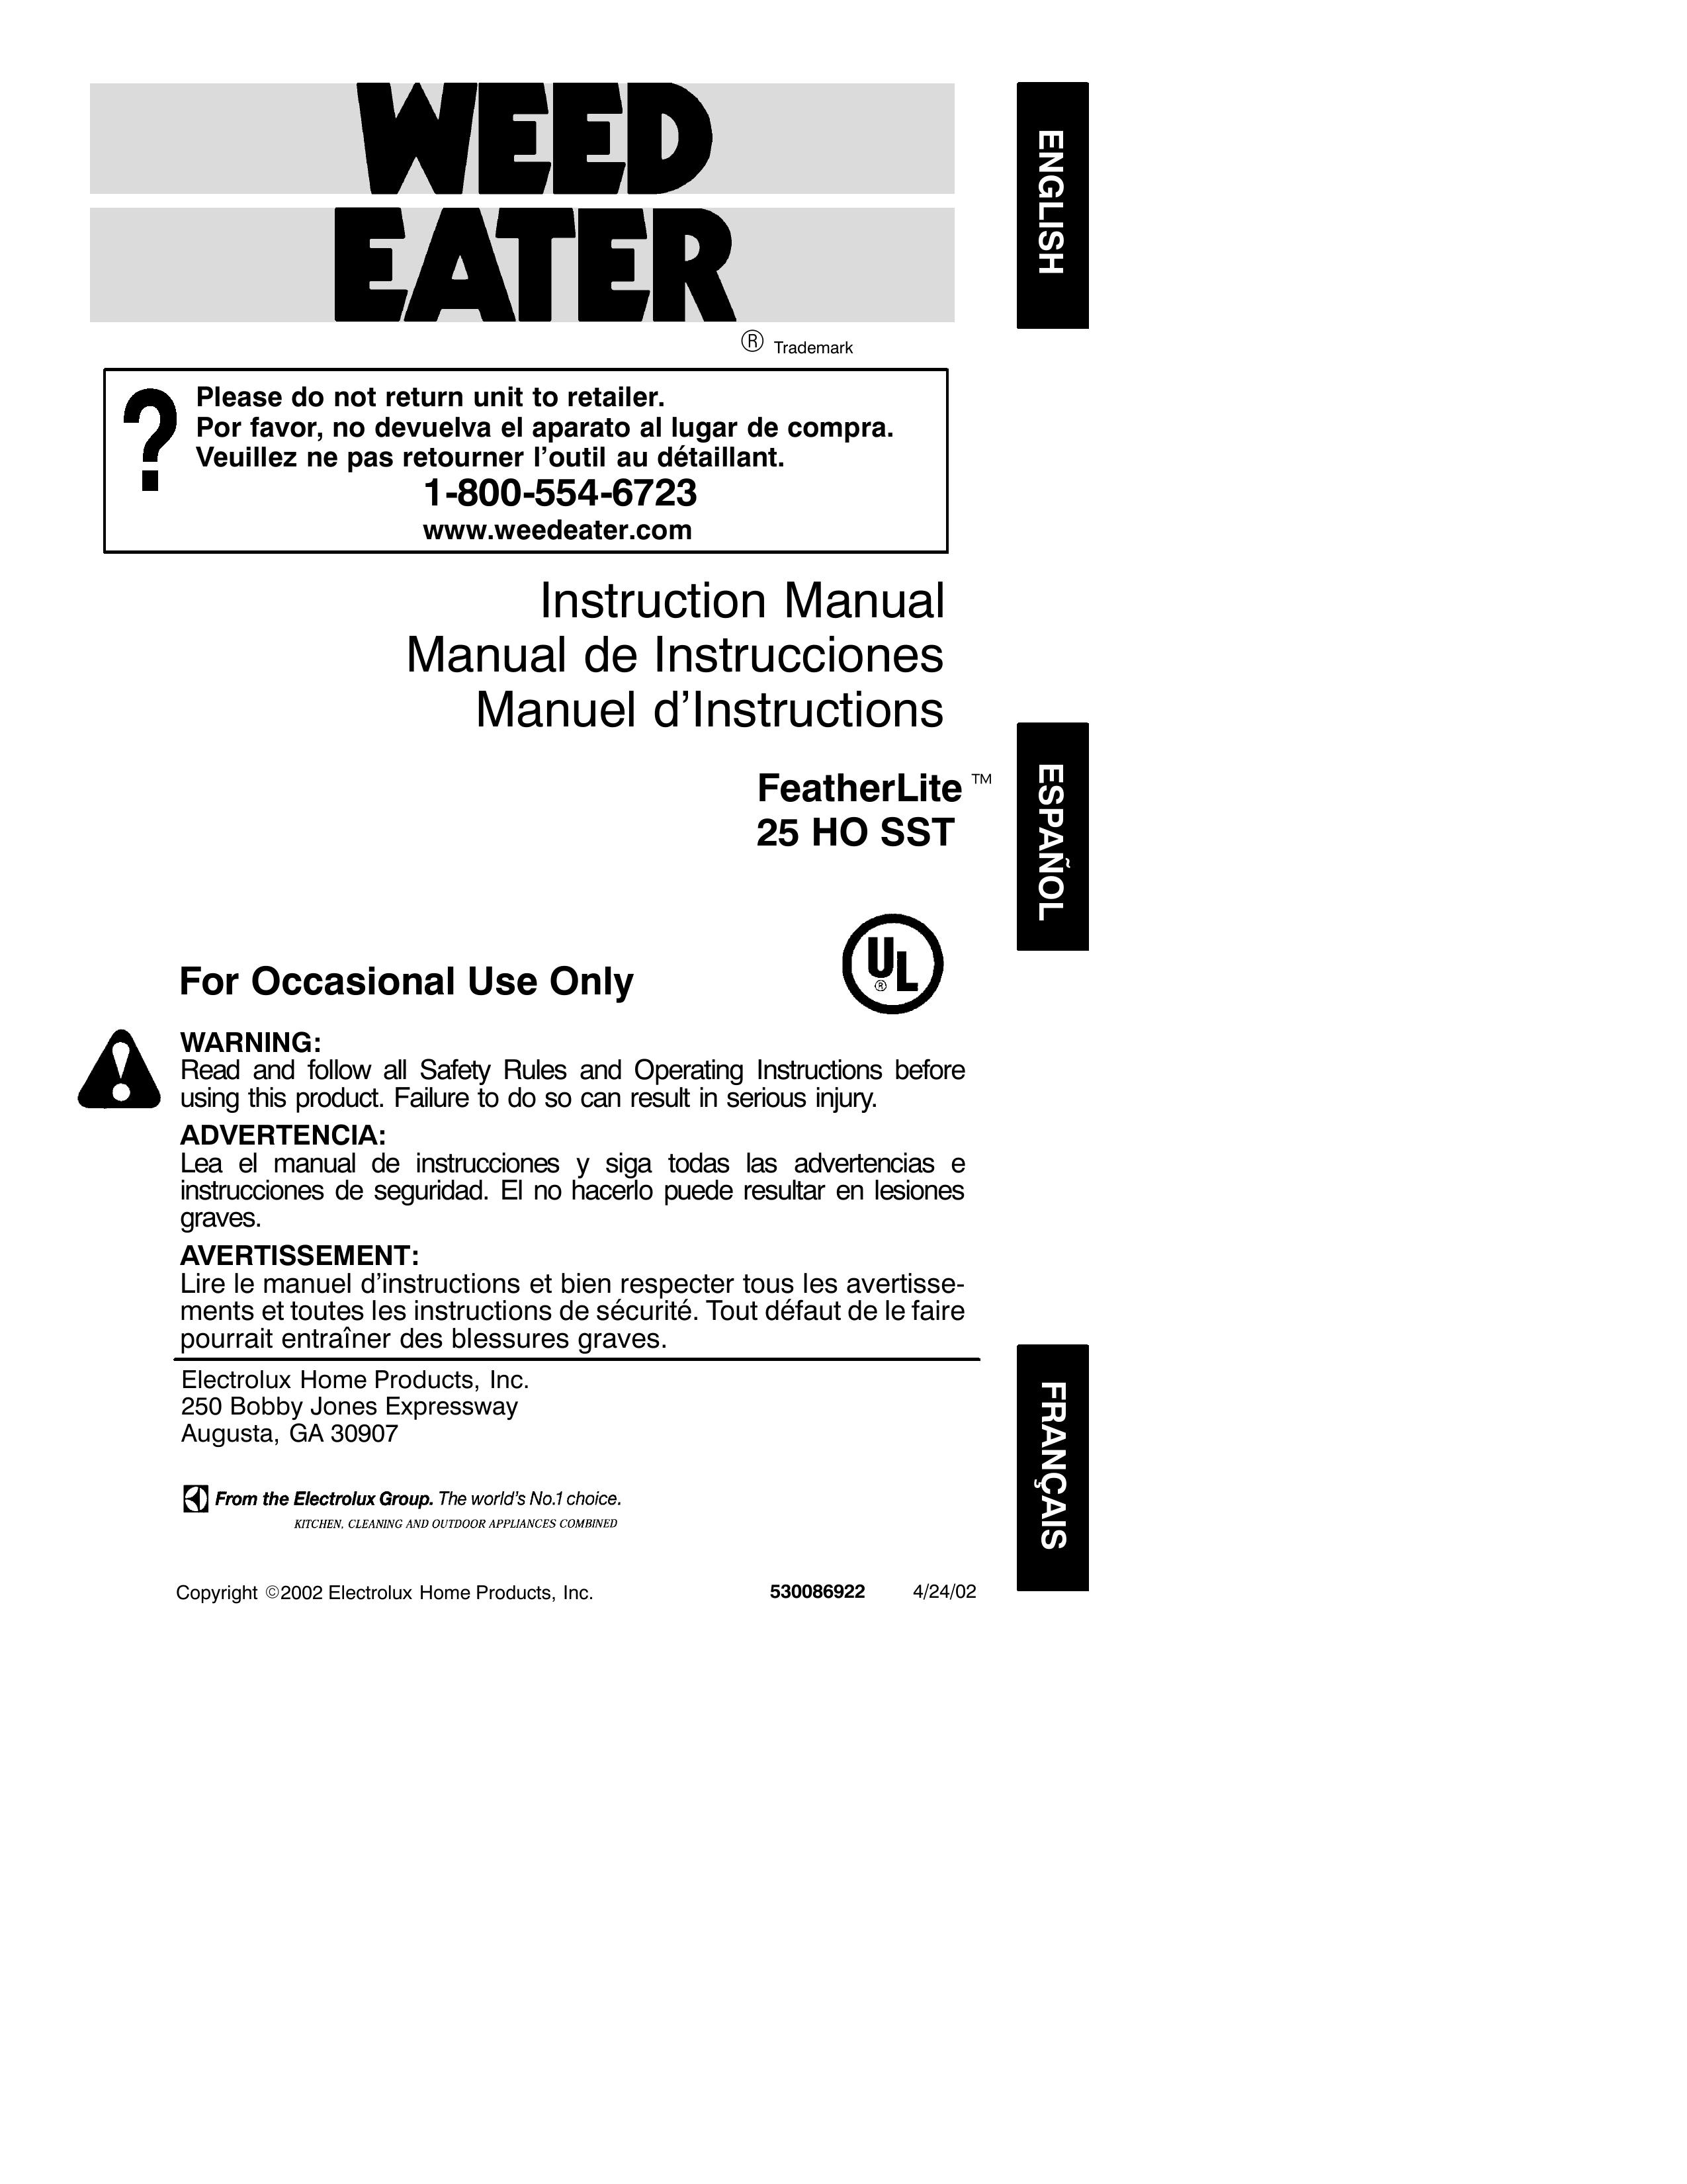 Poulan 25 HO SST Trimmer User Manual